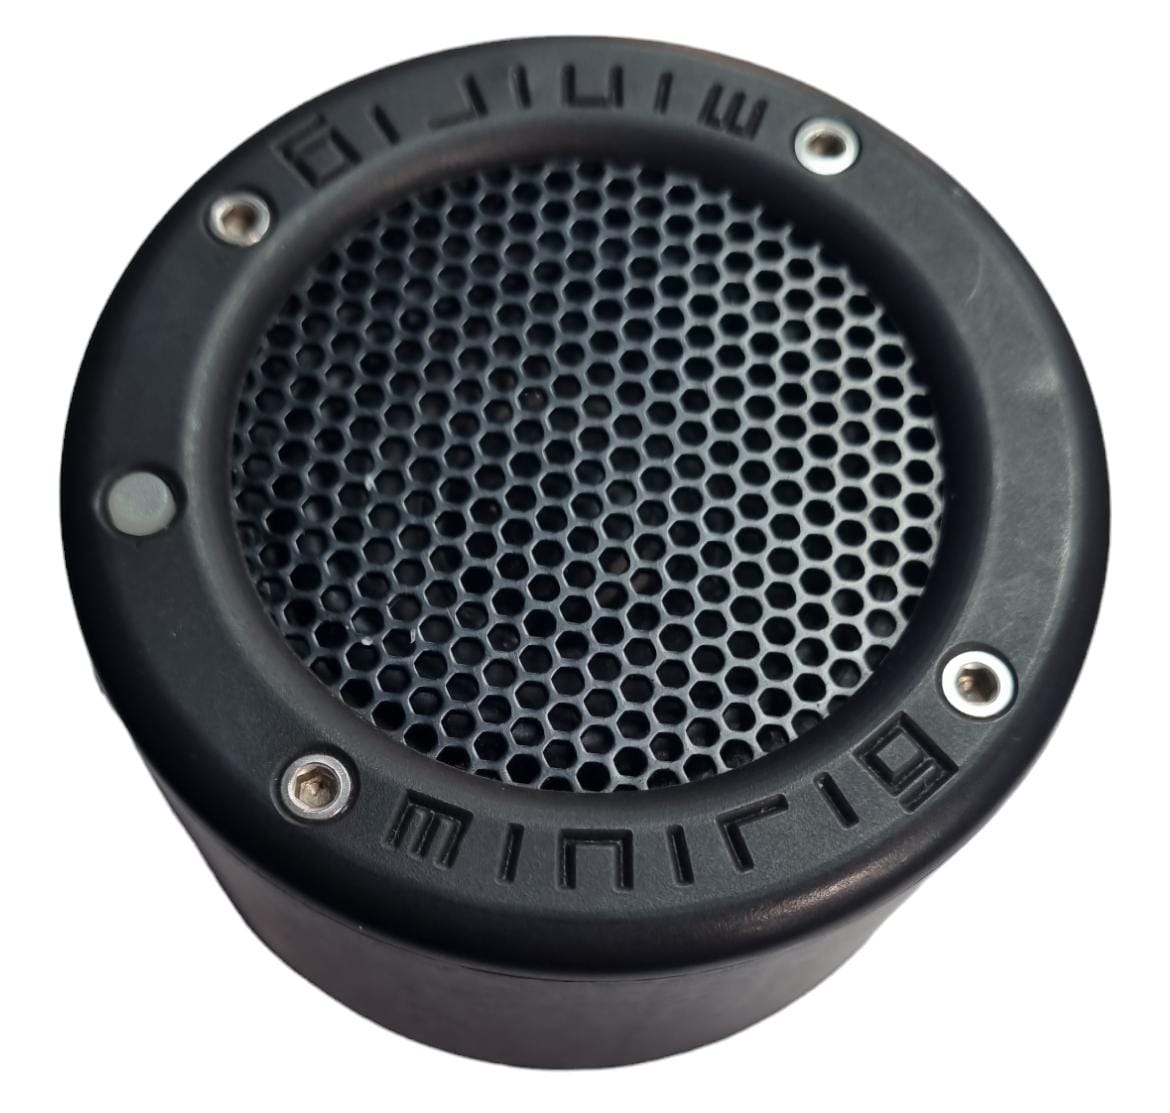 Mini Rig MRM - Portable Rechargable Speaker - No Box